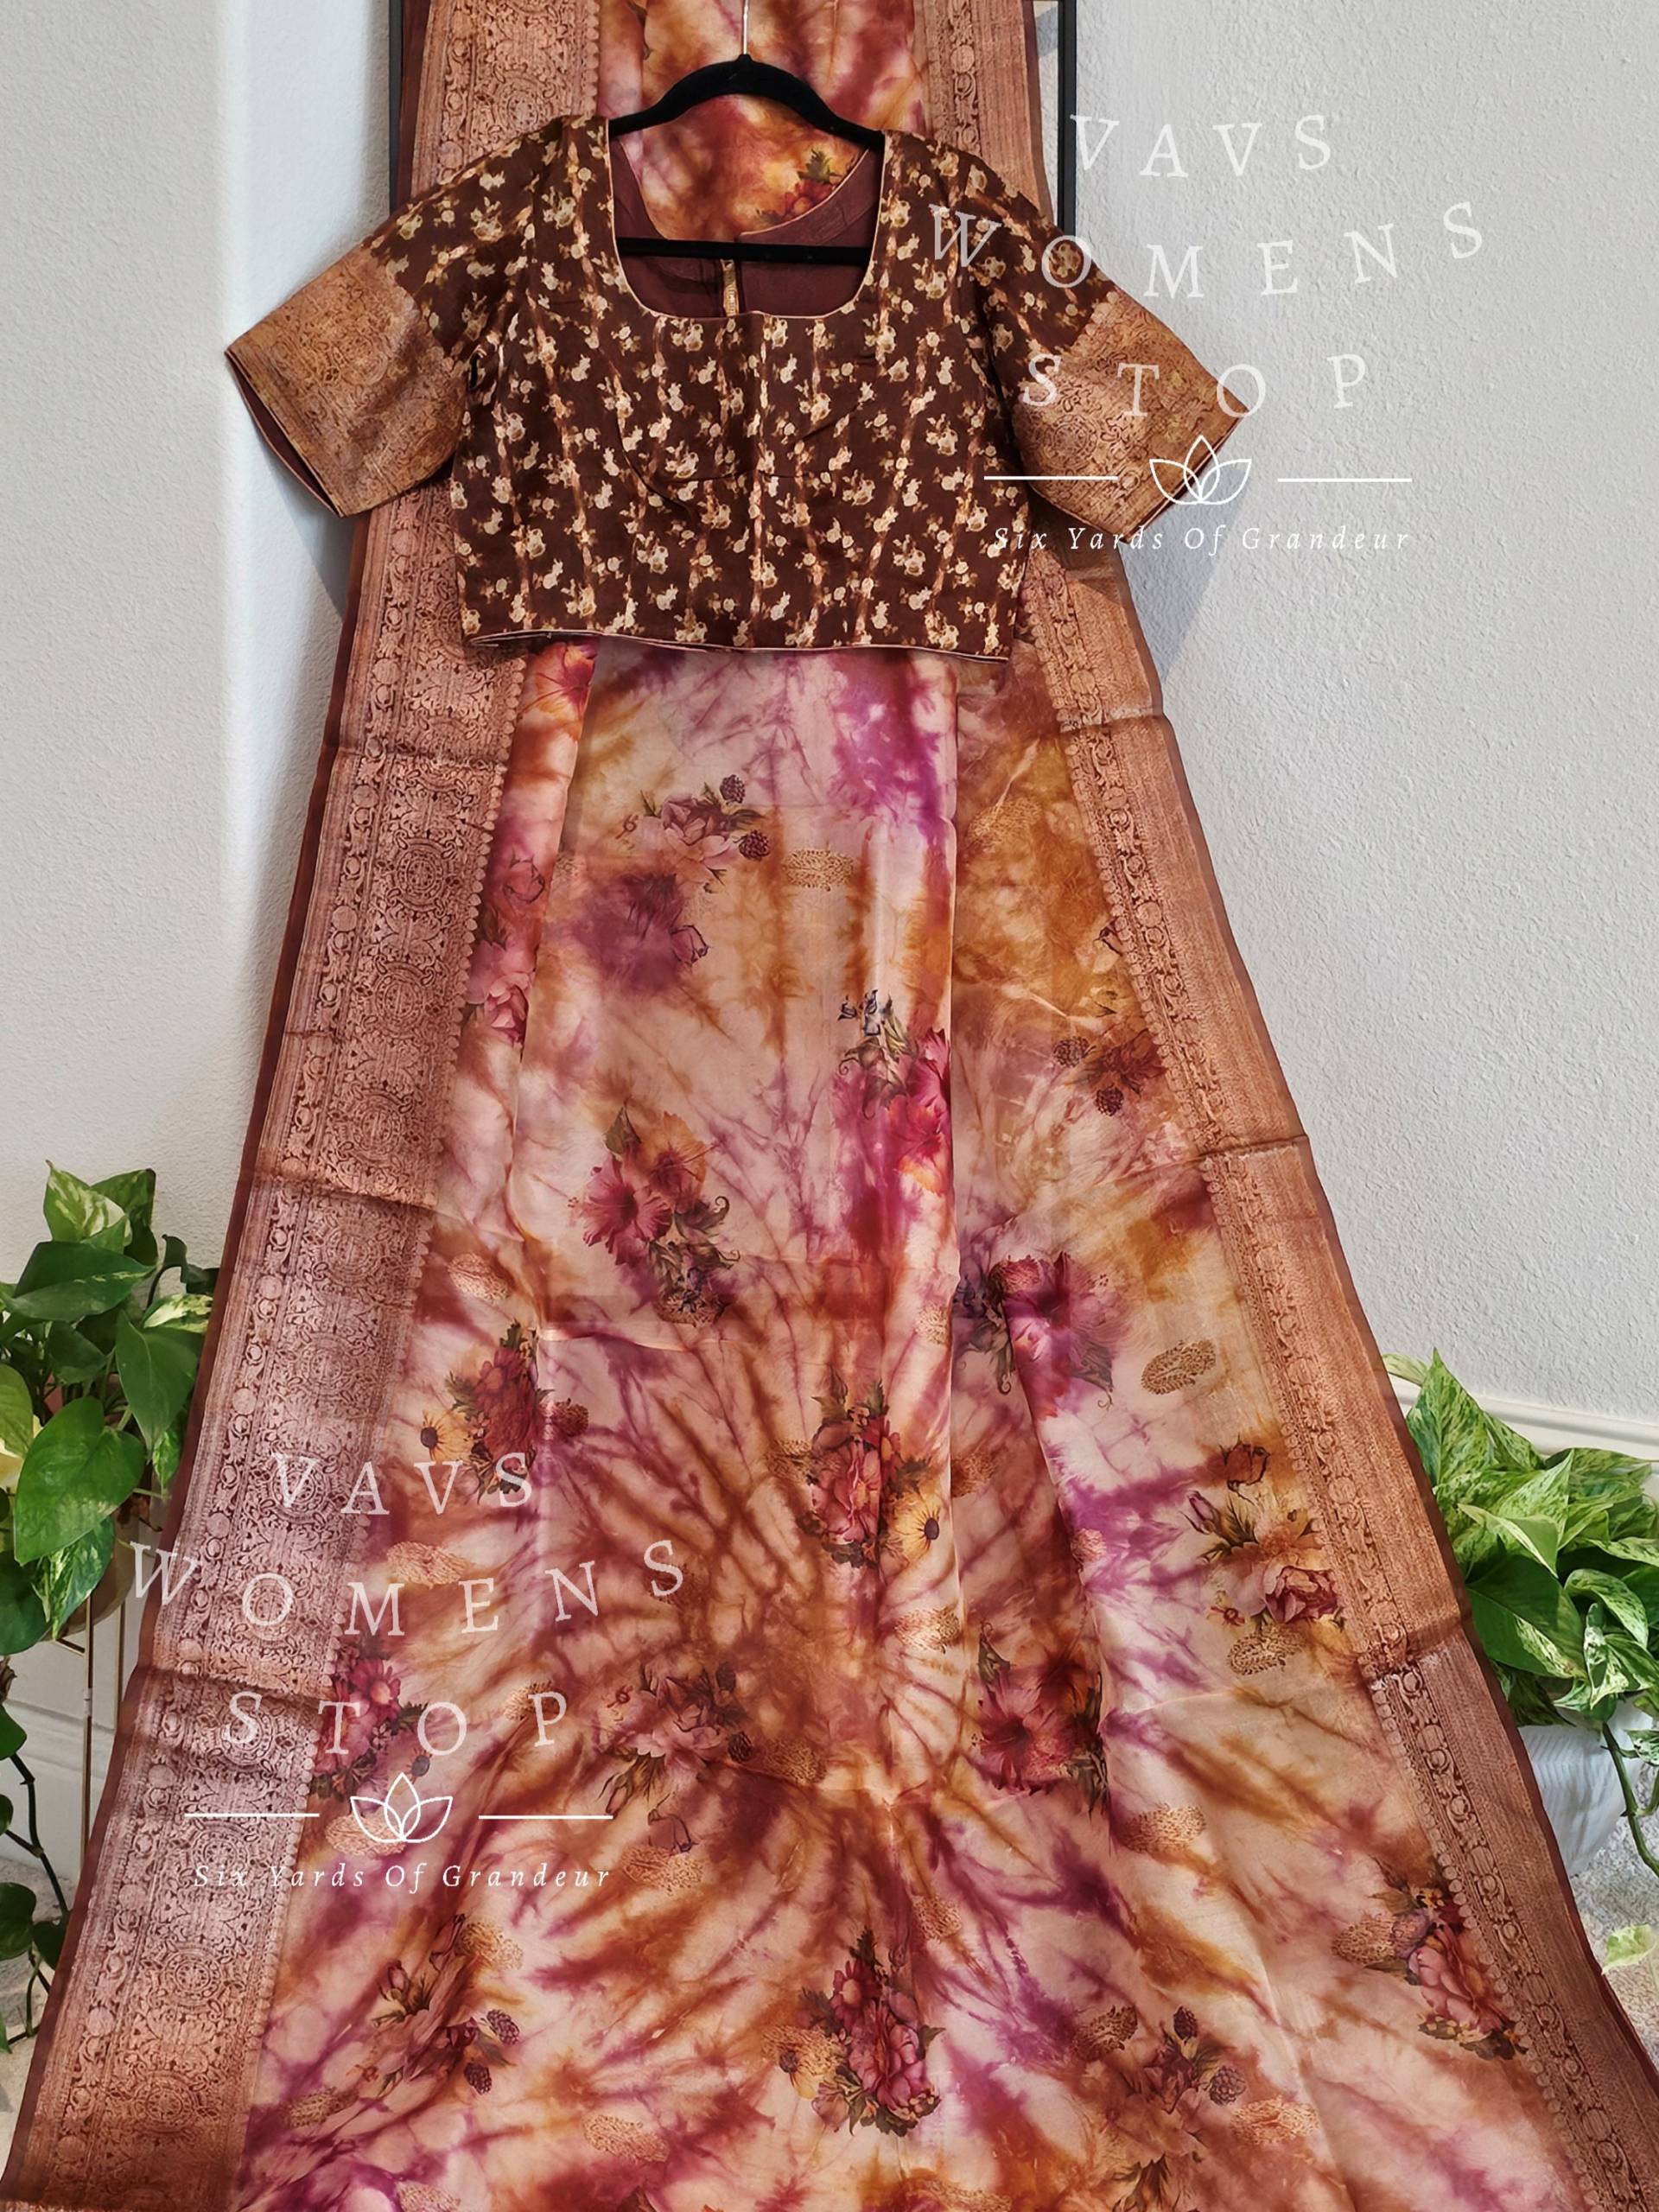 Reine Organza Designer Blumen Shibori Prints Saree - Bluse Größe 38 Reicht Bis 44 Versandfertig Aus Texas, Usa, Von Vavs Womens Stop von VAVSWomensStop